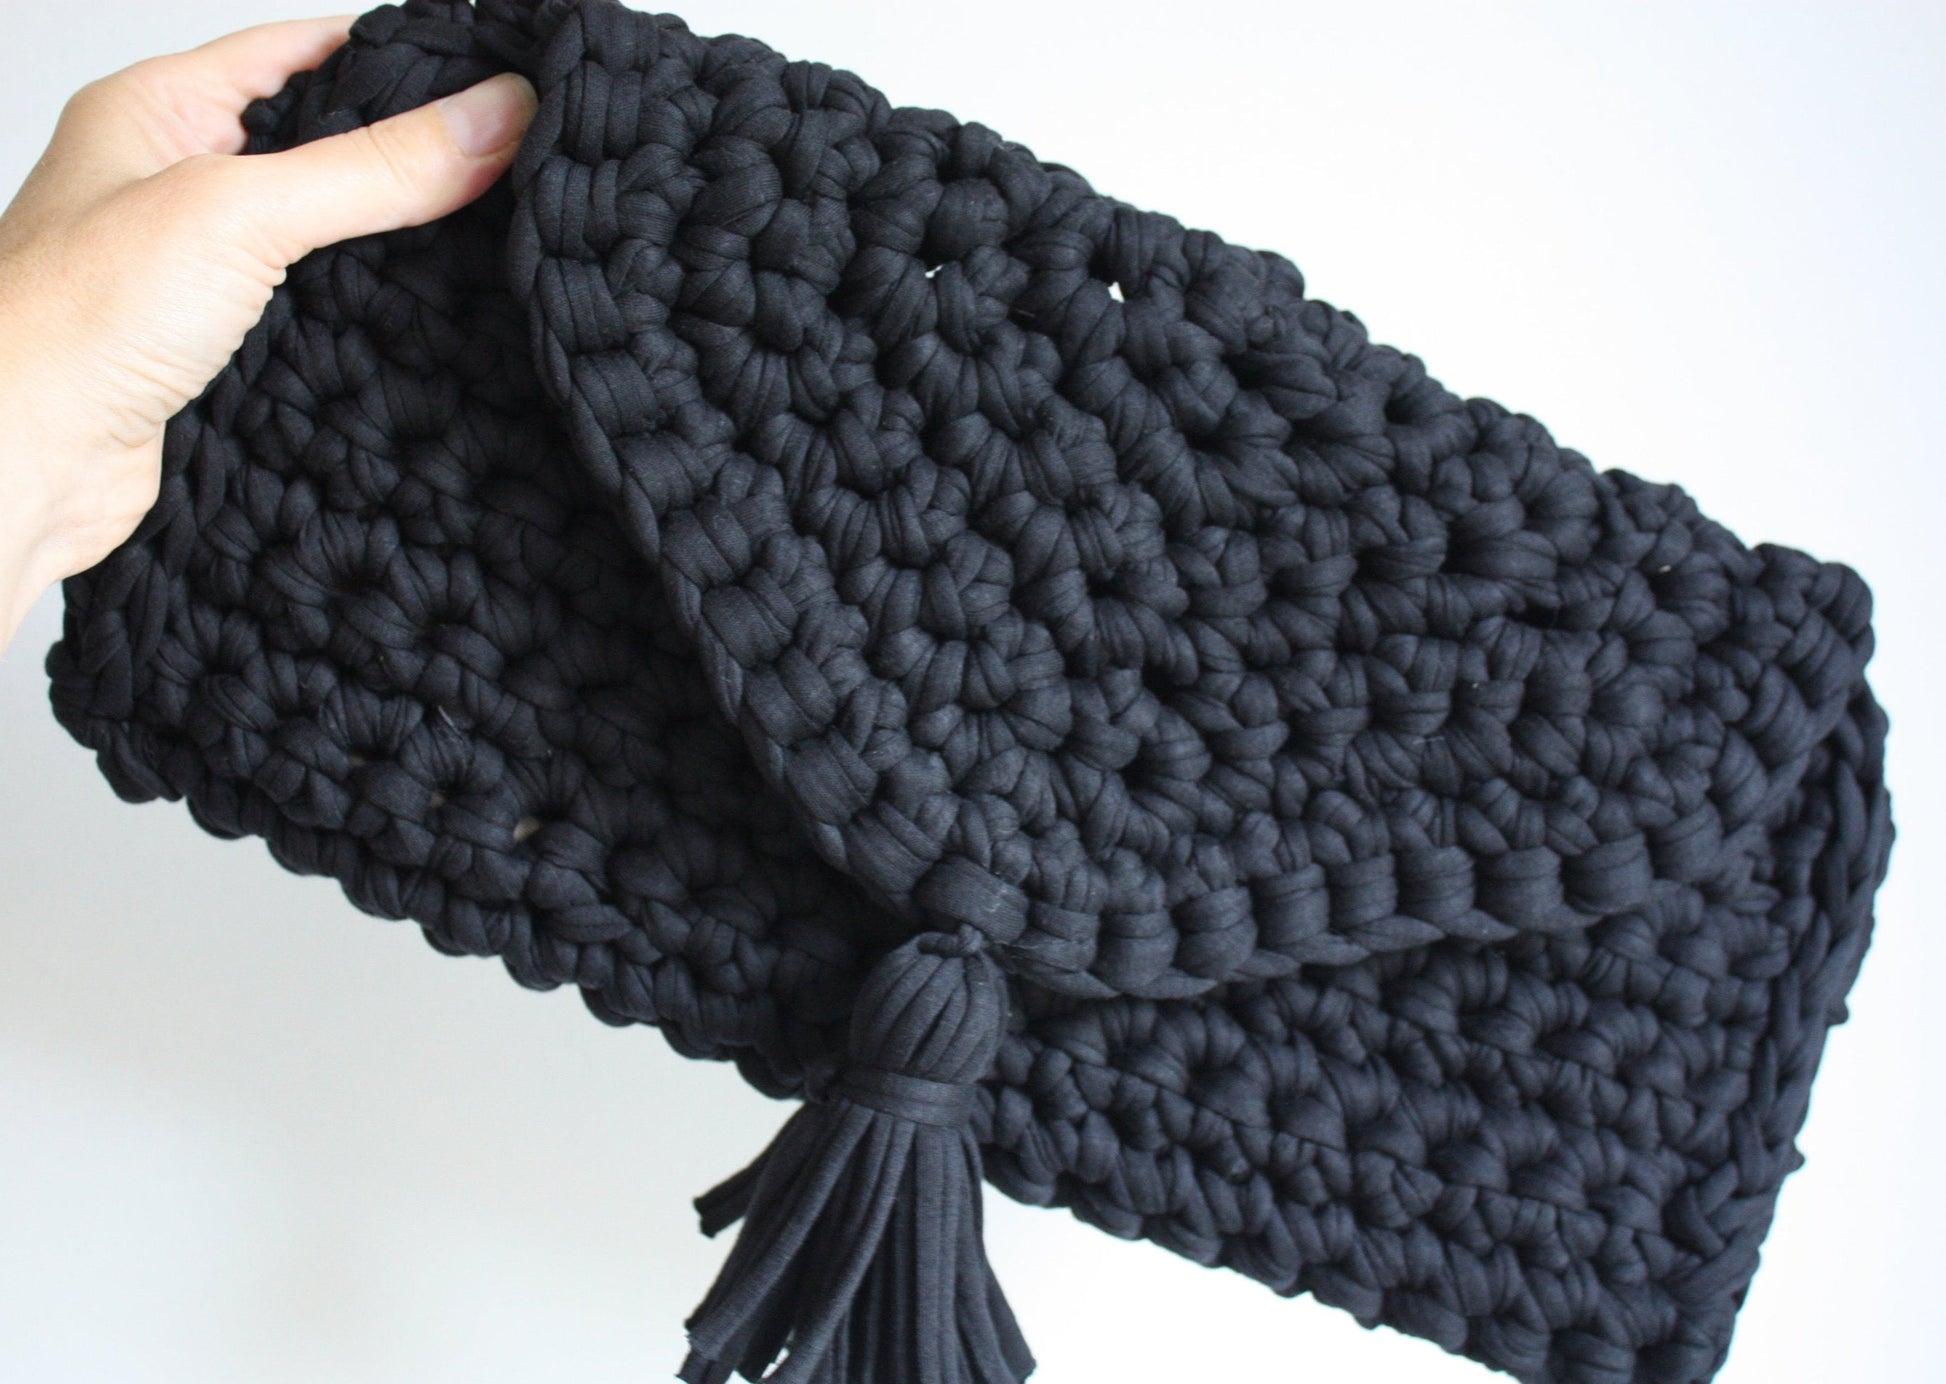 Easy Crochet pattern - Oversized T Shirt Yarn Clutch Bag - King & Eye